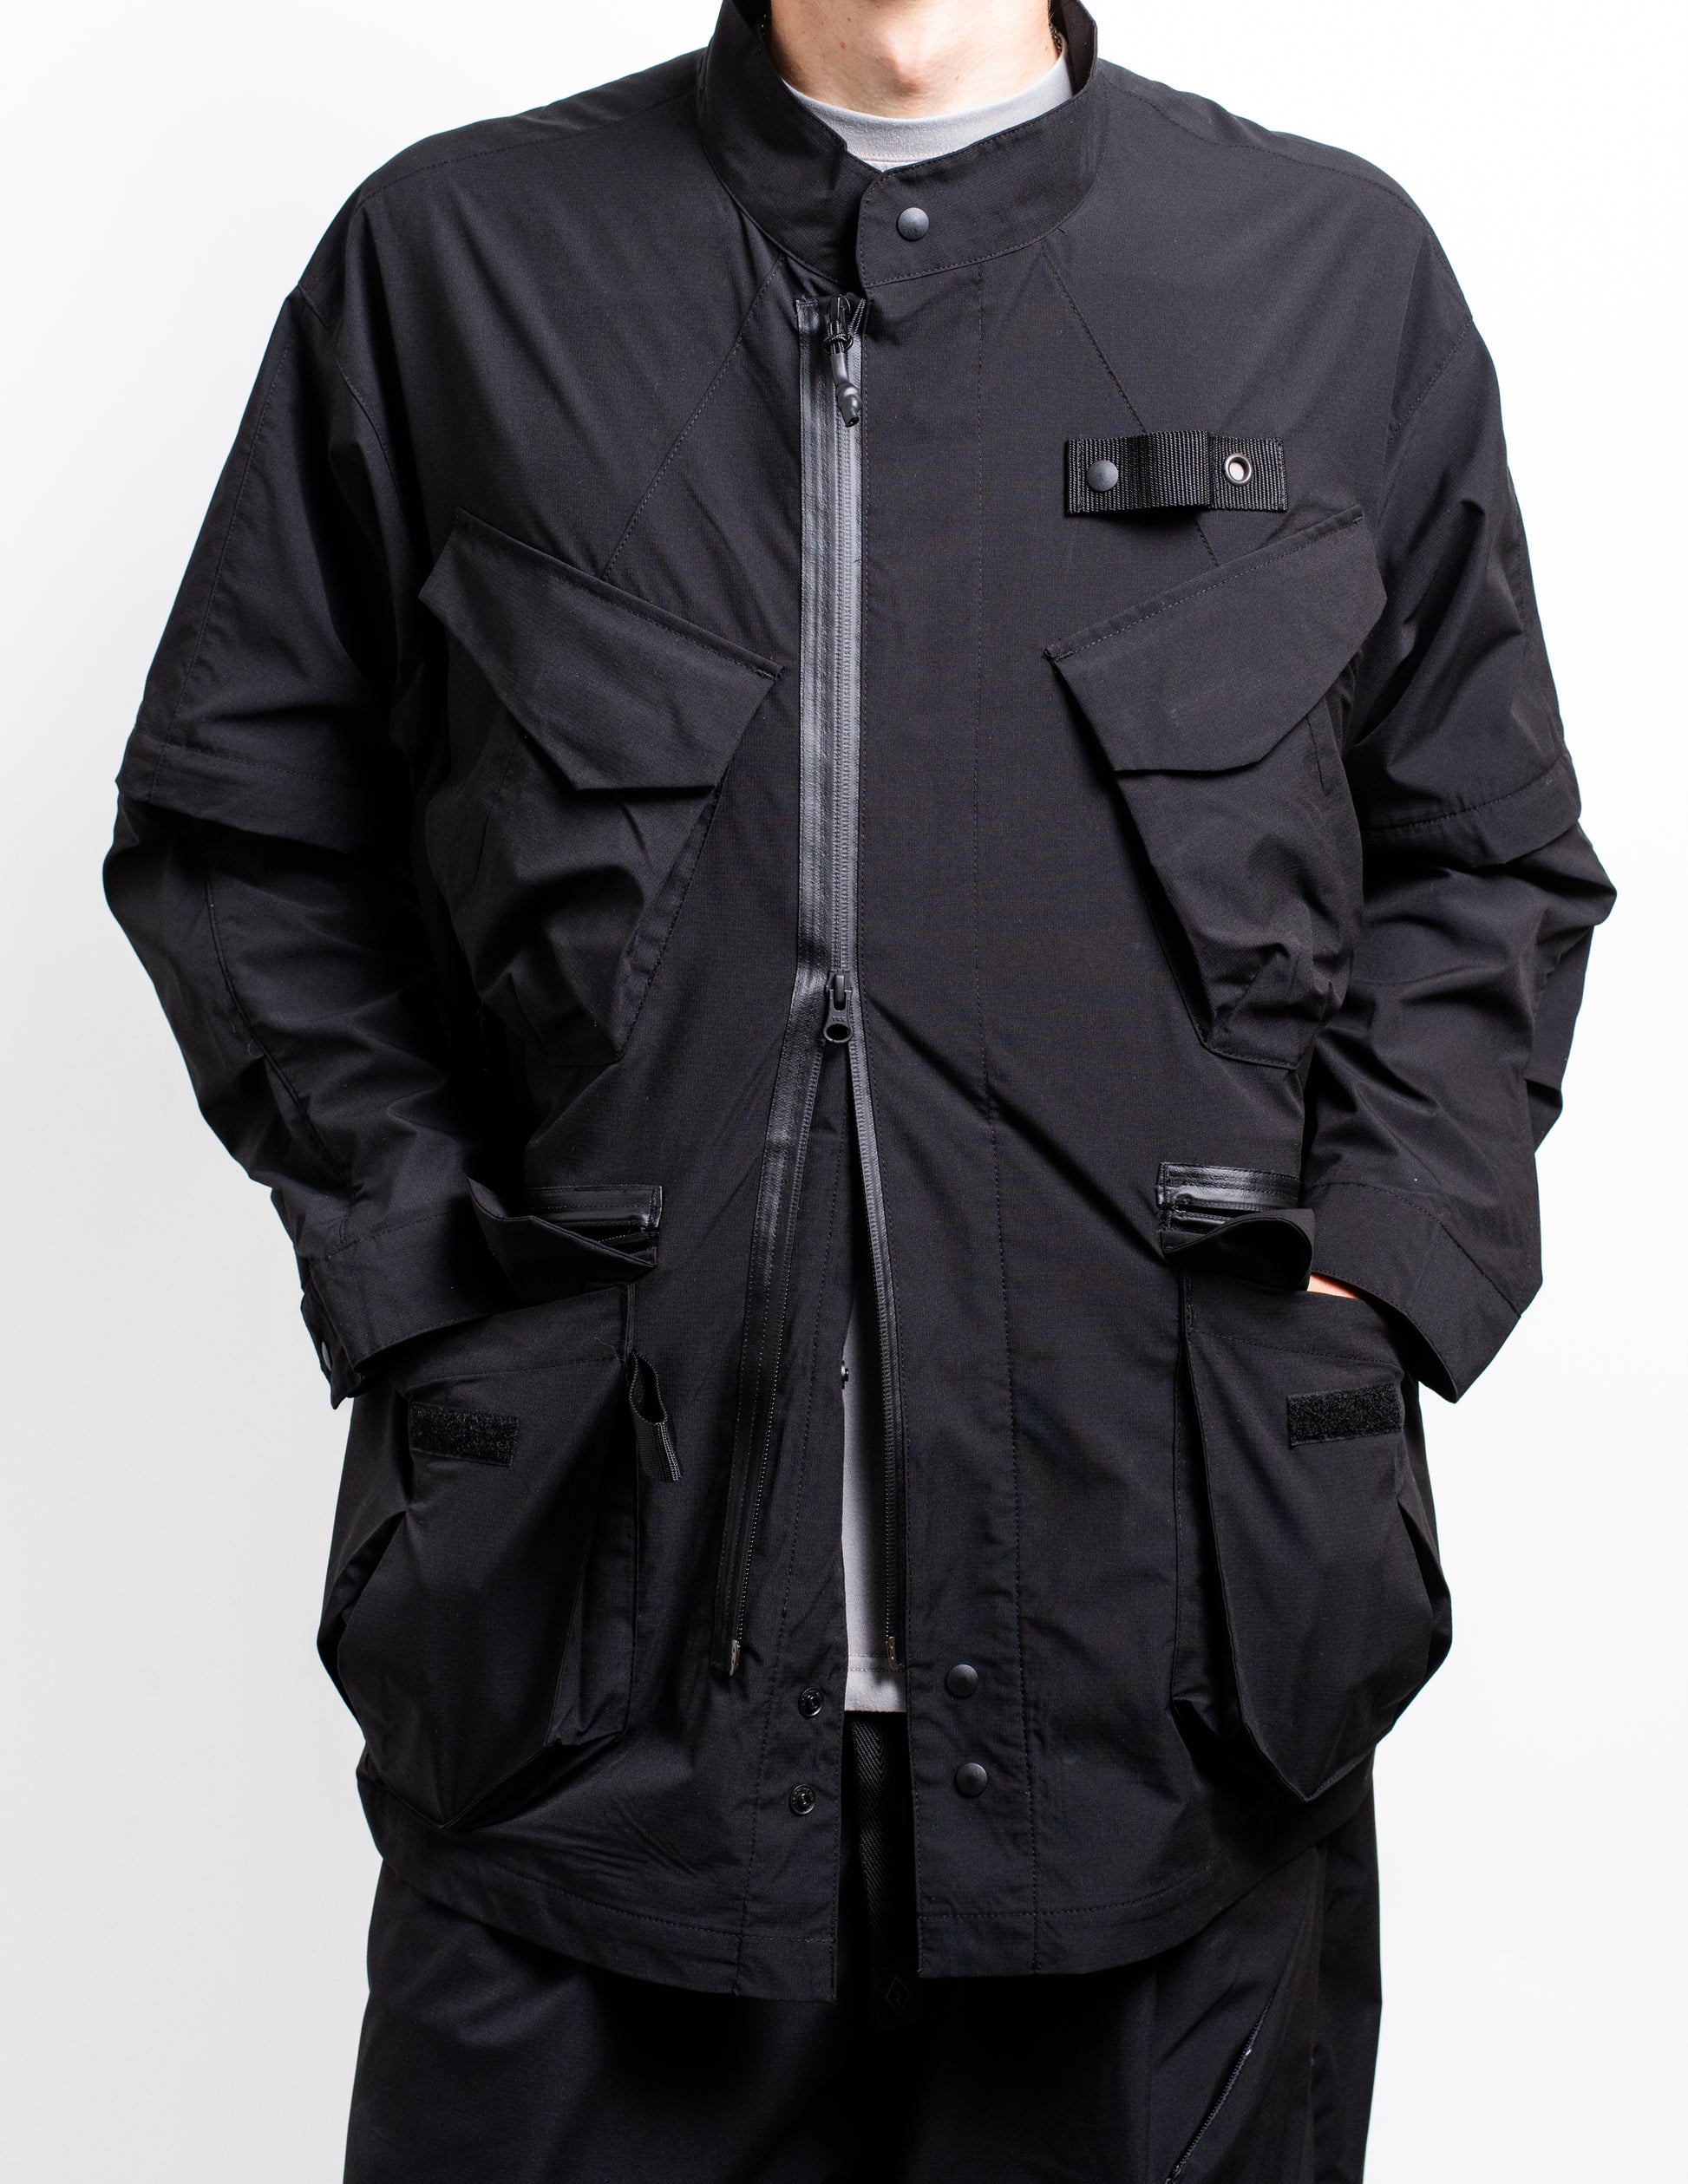 gorpcore oversized nylon jacket from Japan